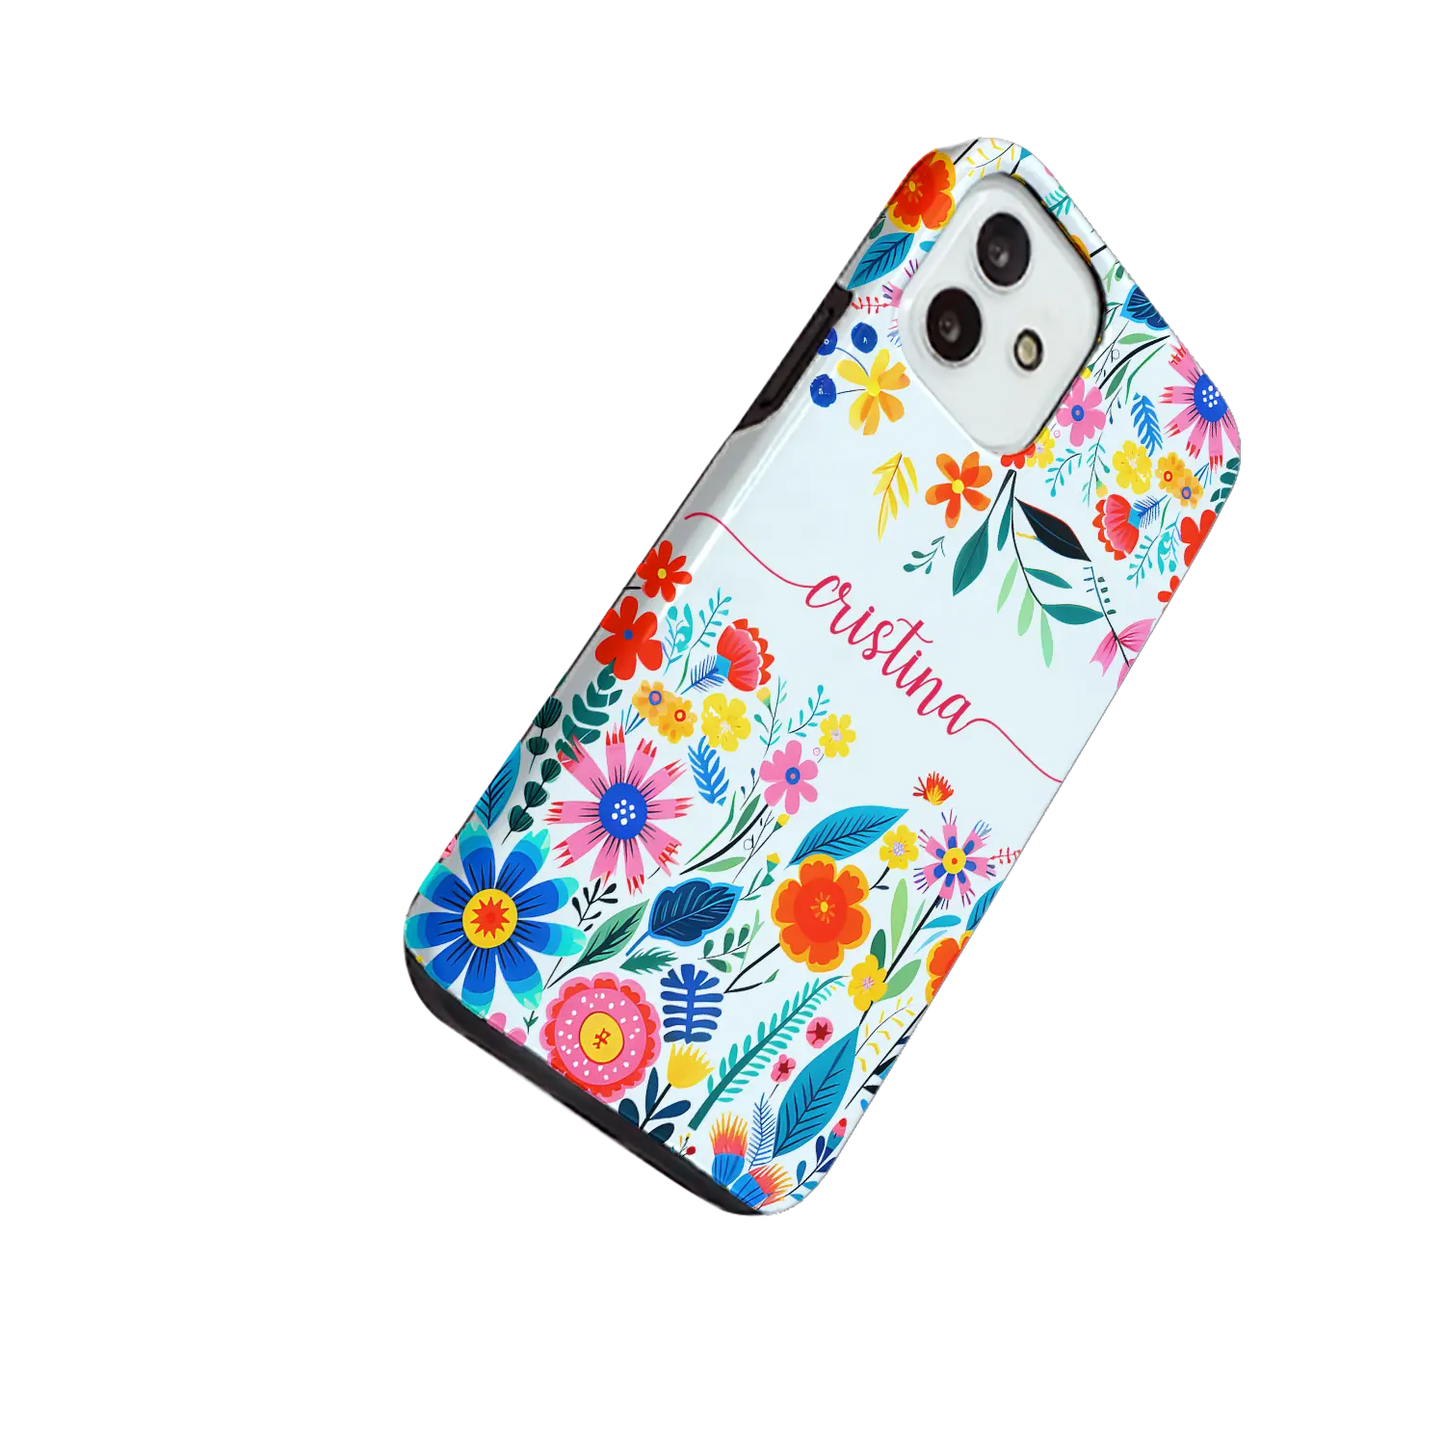 Happy Flowers - Coque personnaliséee pour iPhone